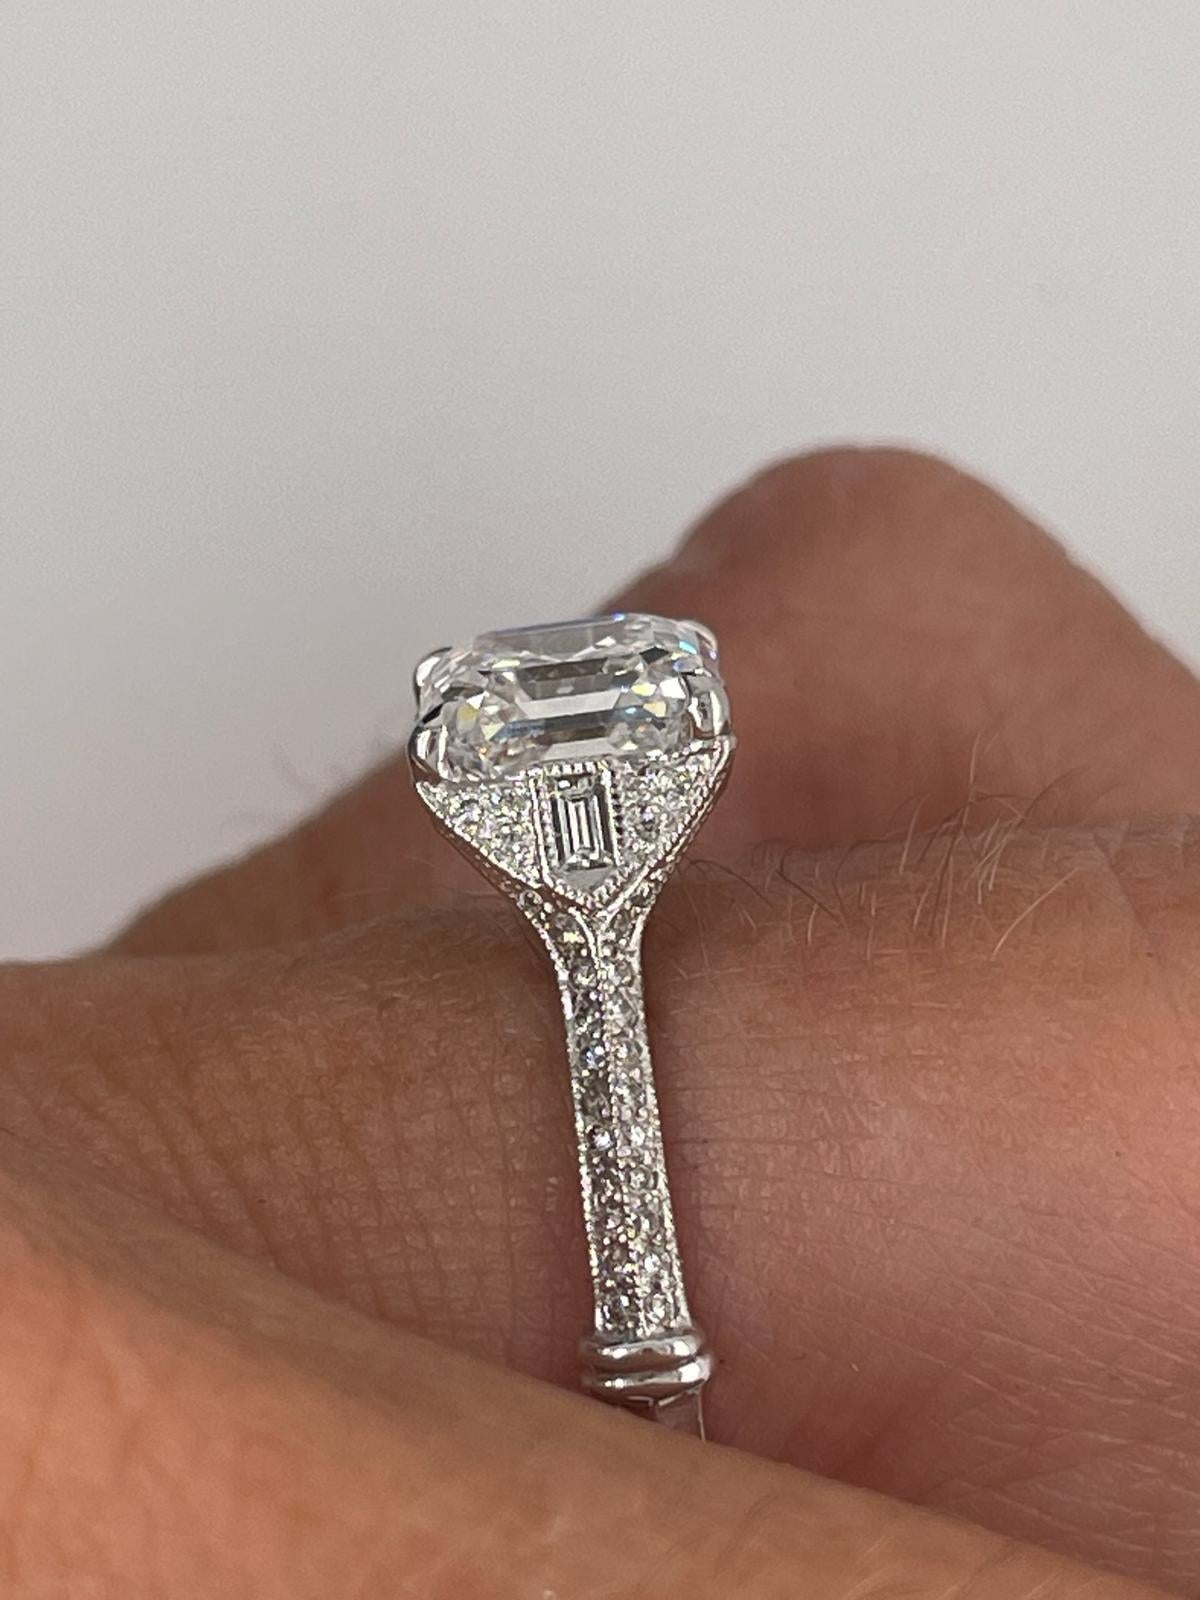 For Sale:  2ct Art Deco asscher cut diamond ring 14